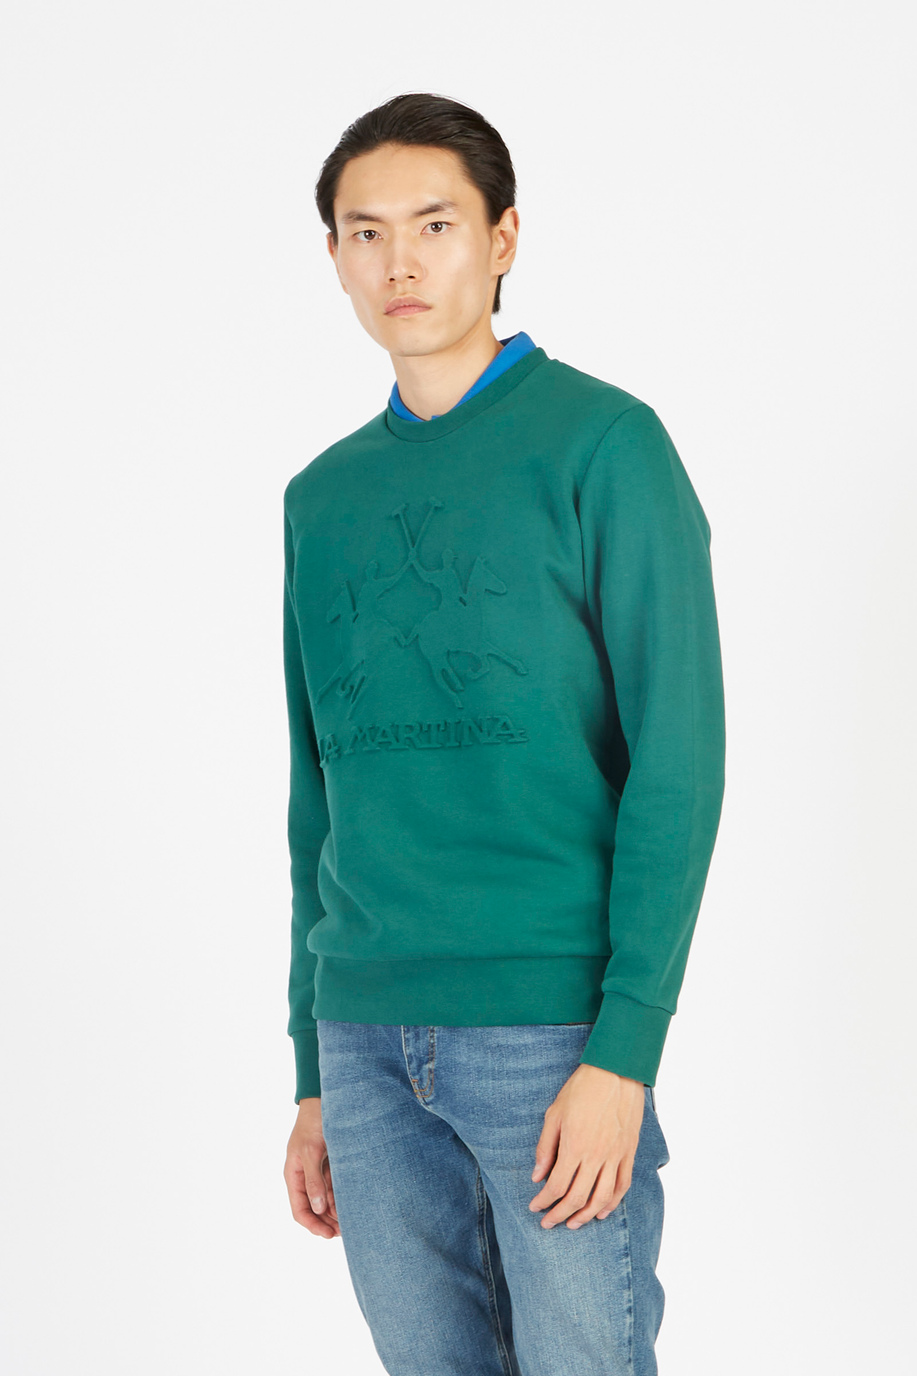 Herren-Sweatshirt aus 100% Baumwolle mit langen Ärmeln - Neuankömmlinge Herren | La Martina - Official Online Shop